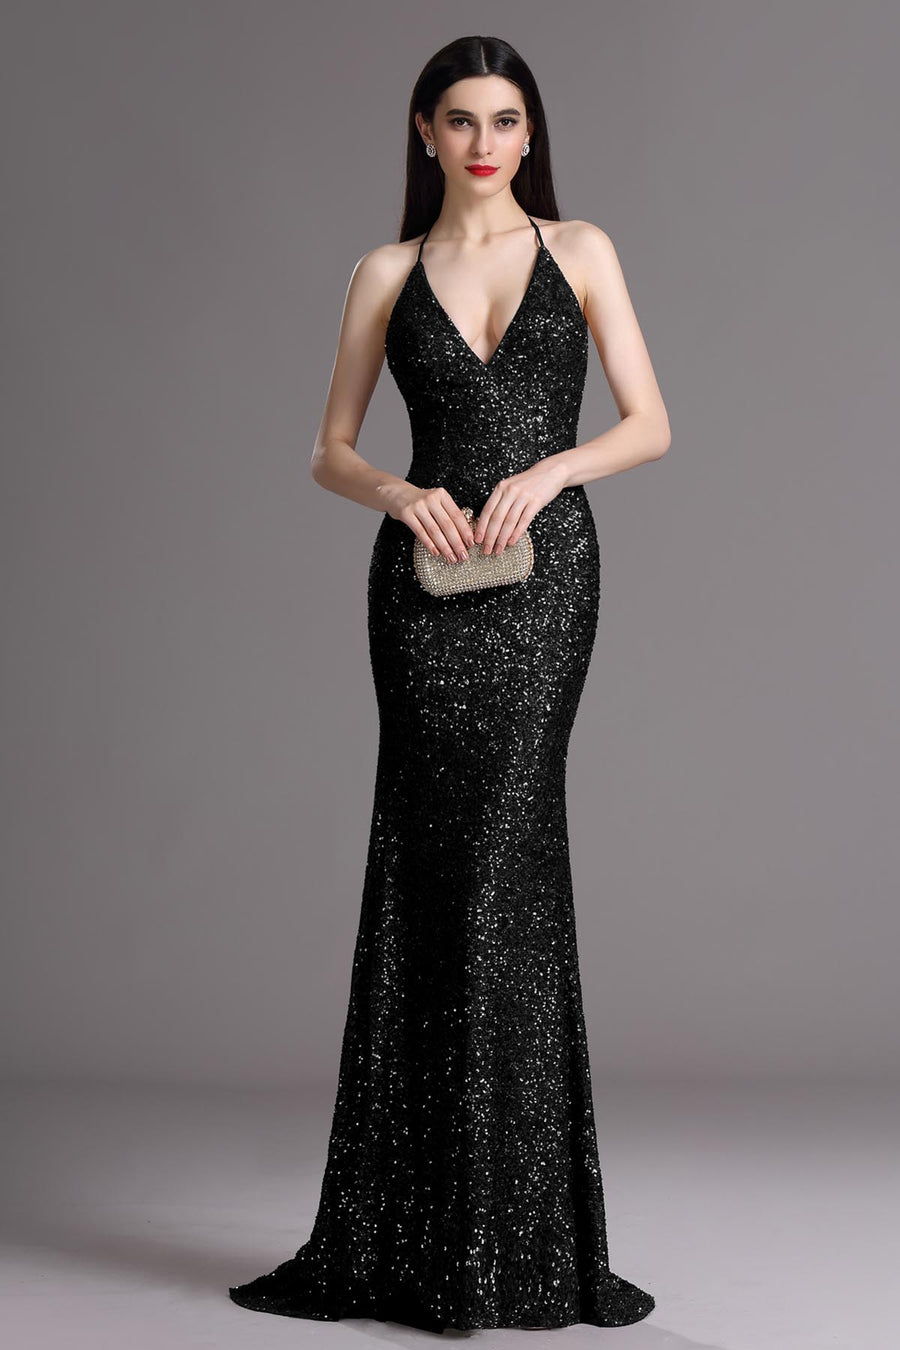 Empire Waist V-neck Sleeveless Full Length Promo Dresses